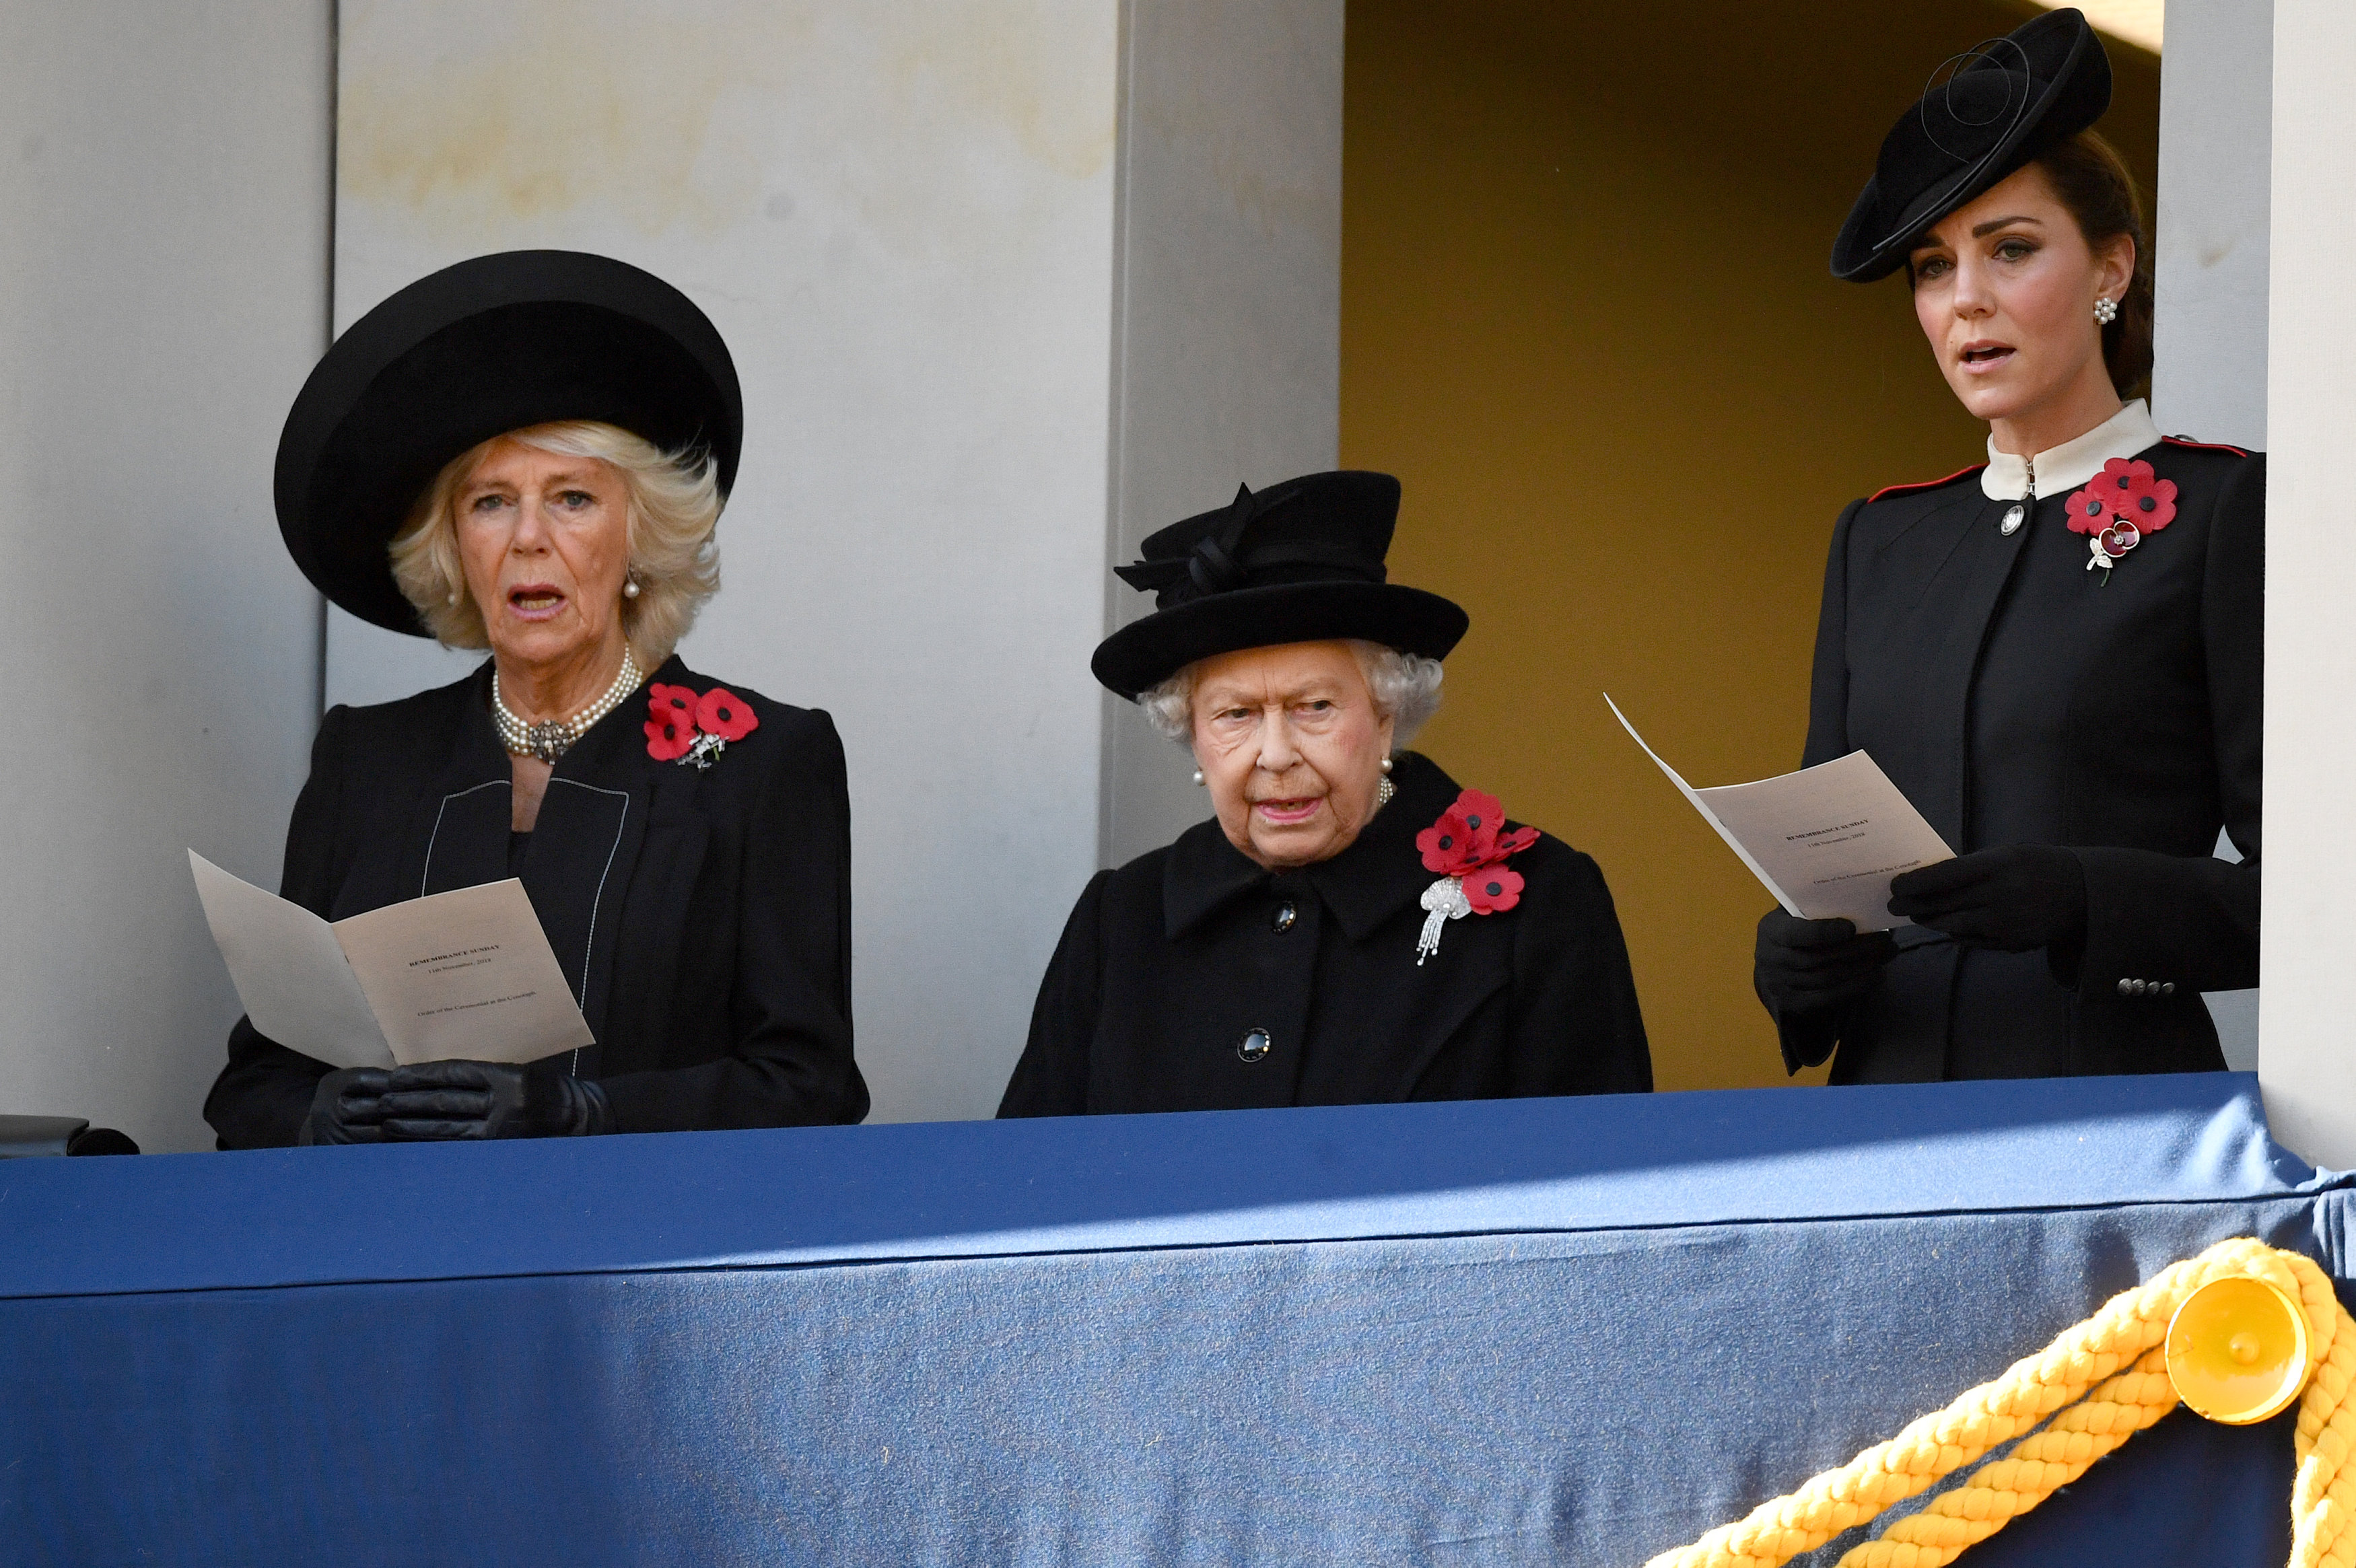 Por qué Meghan Markle quedó apartada de la reina Isabel y Kate Middleton en el “Remembrance Day” - La Patilla